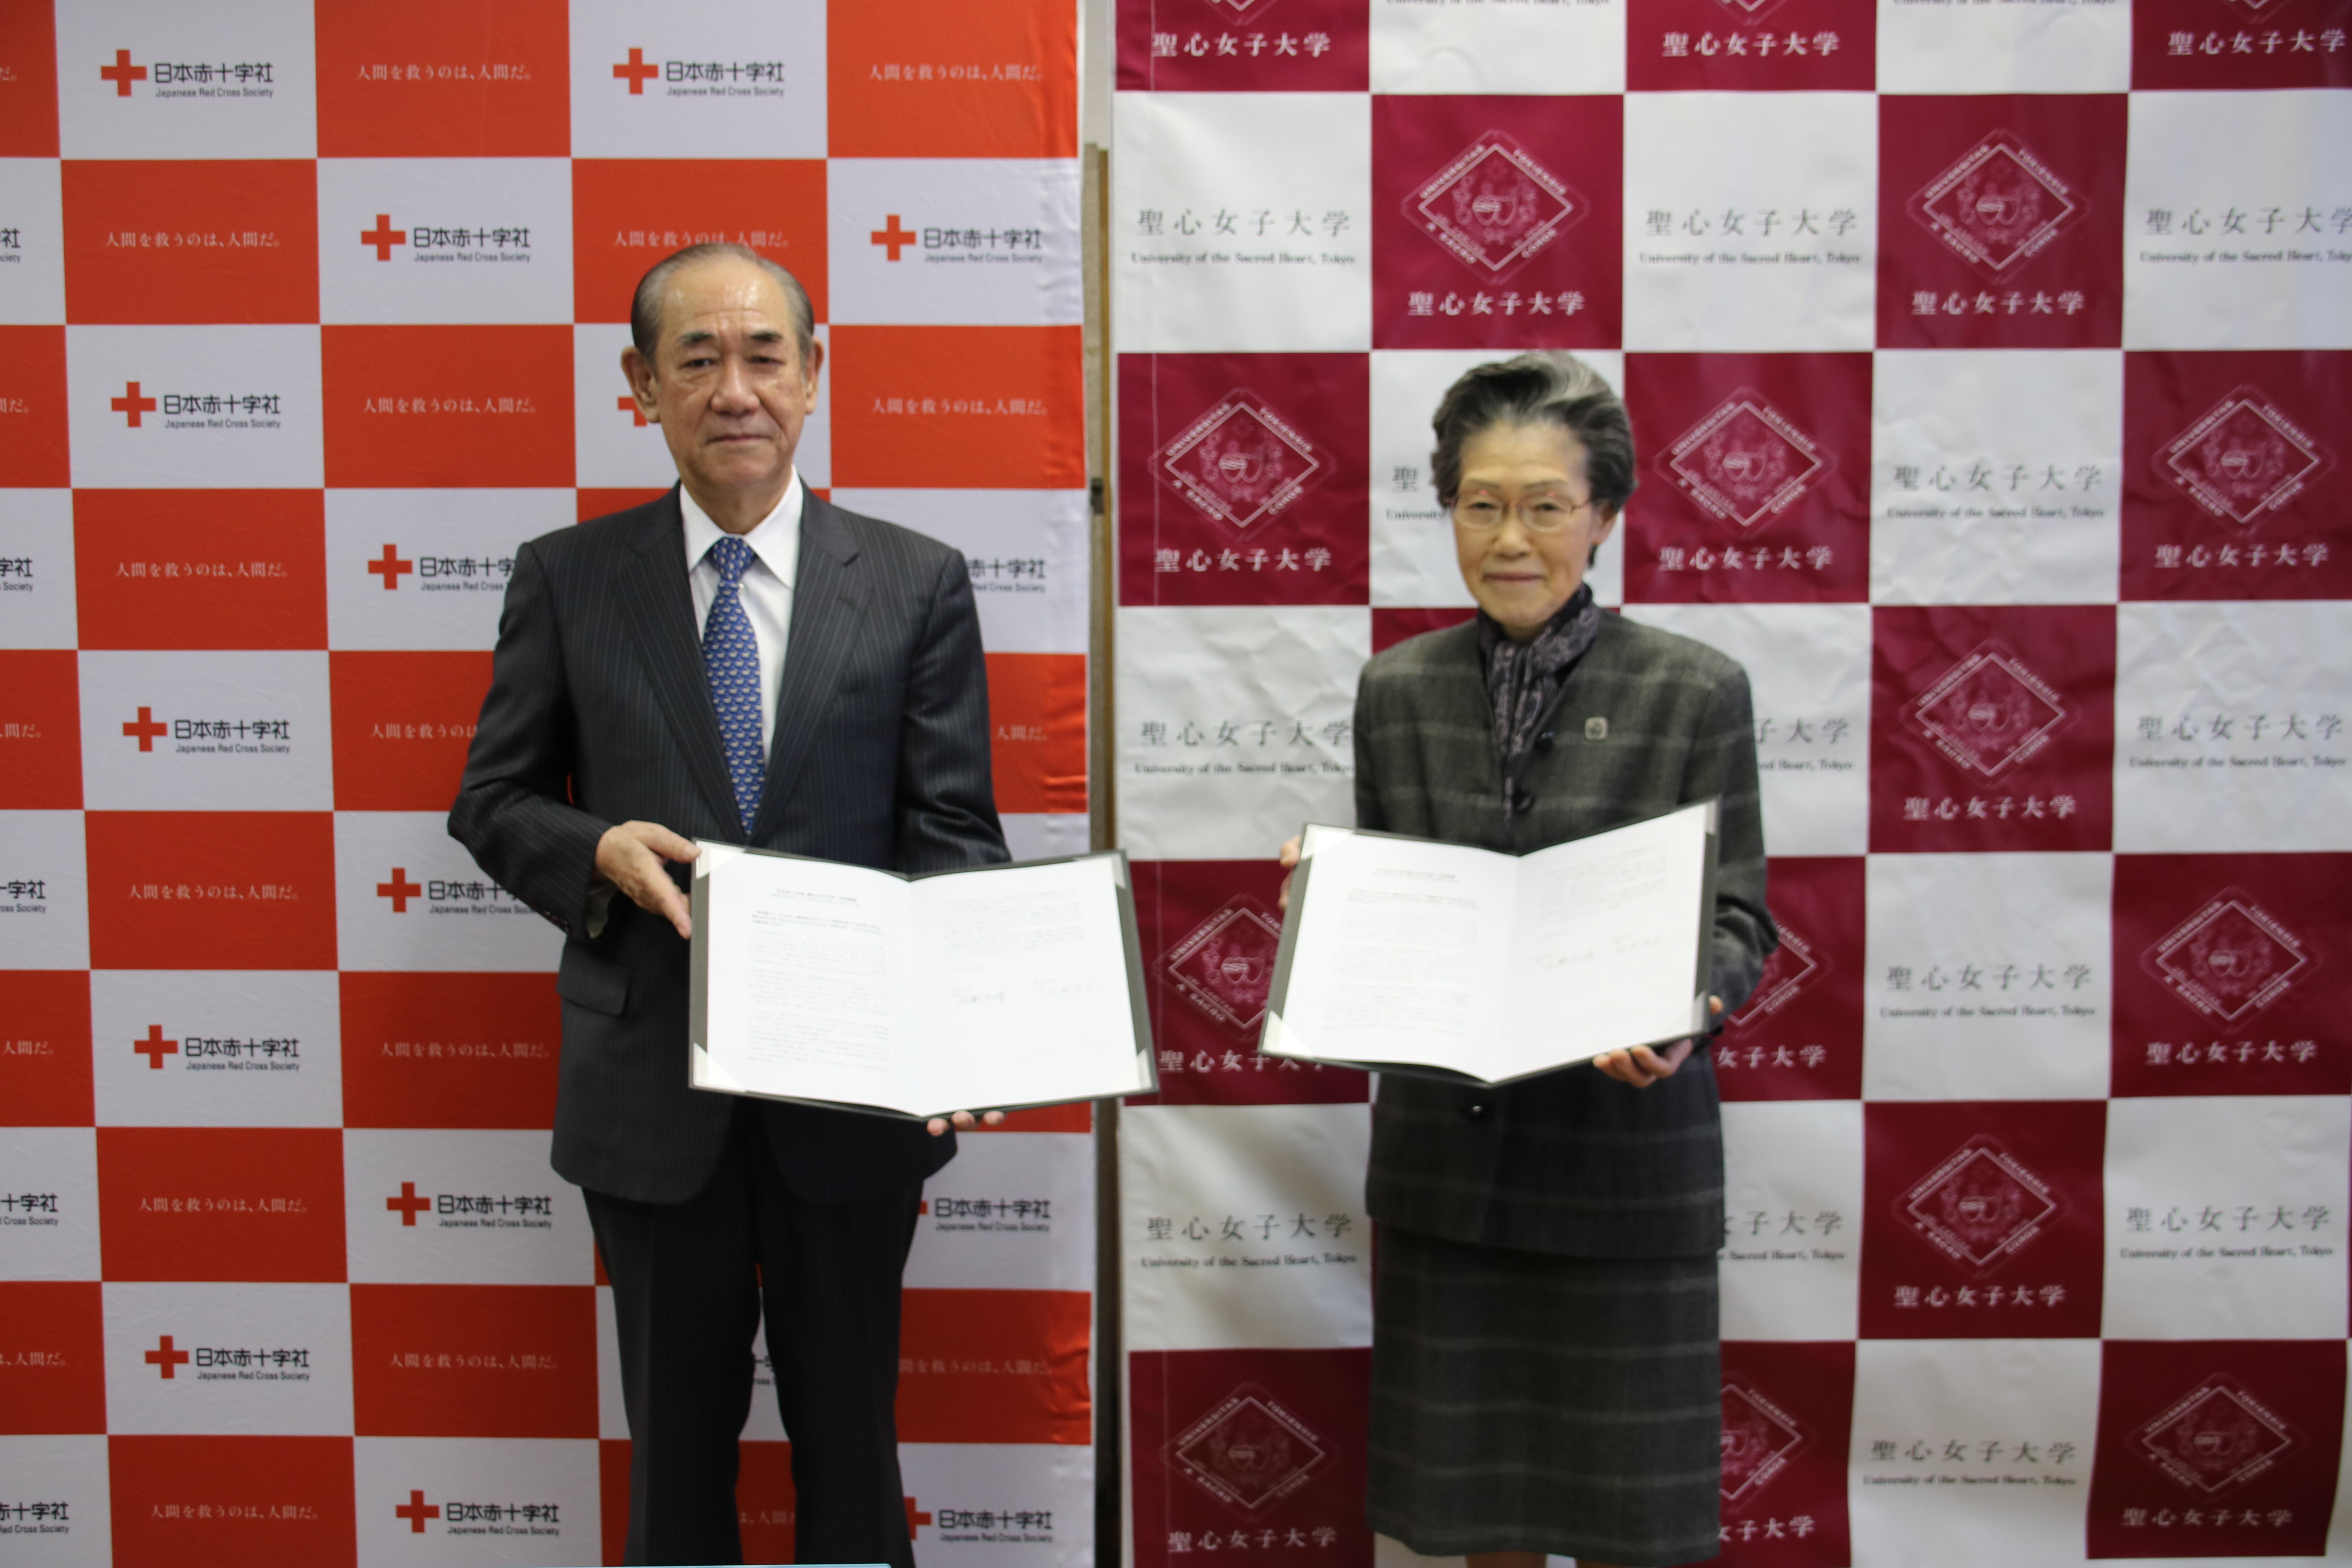 聖心女子大学と日本赤十字社が、3月14日に共同宣言「ボランティア・パートナーシップ・アグリーメント」に調印